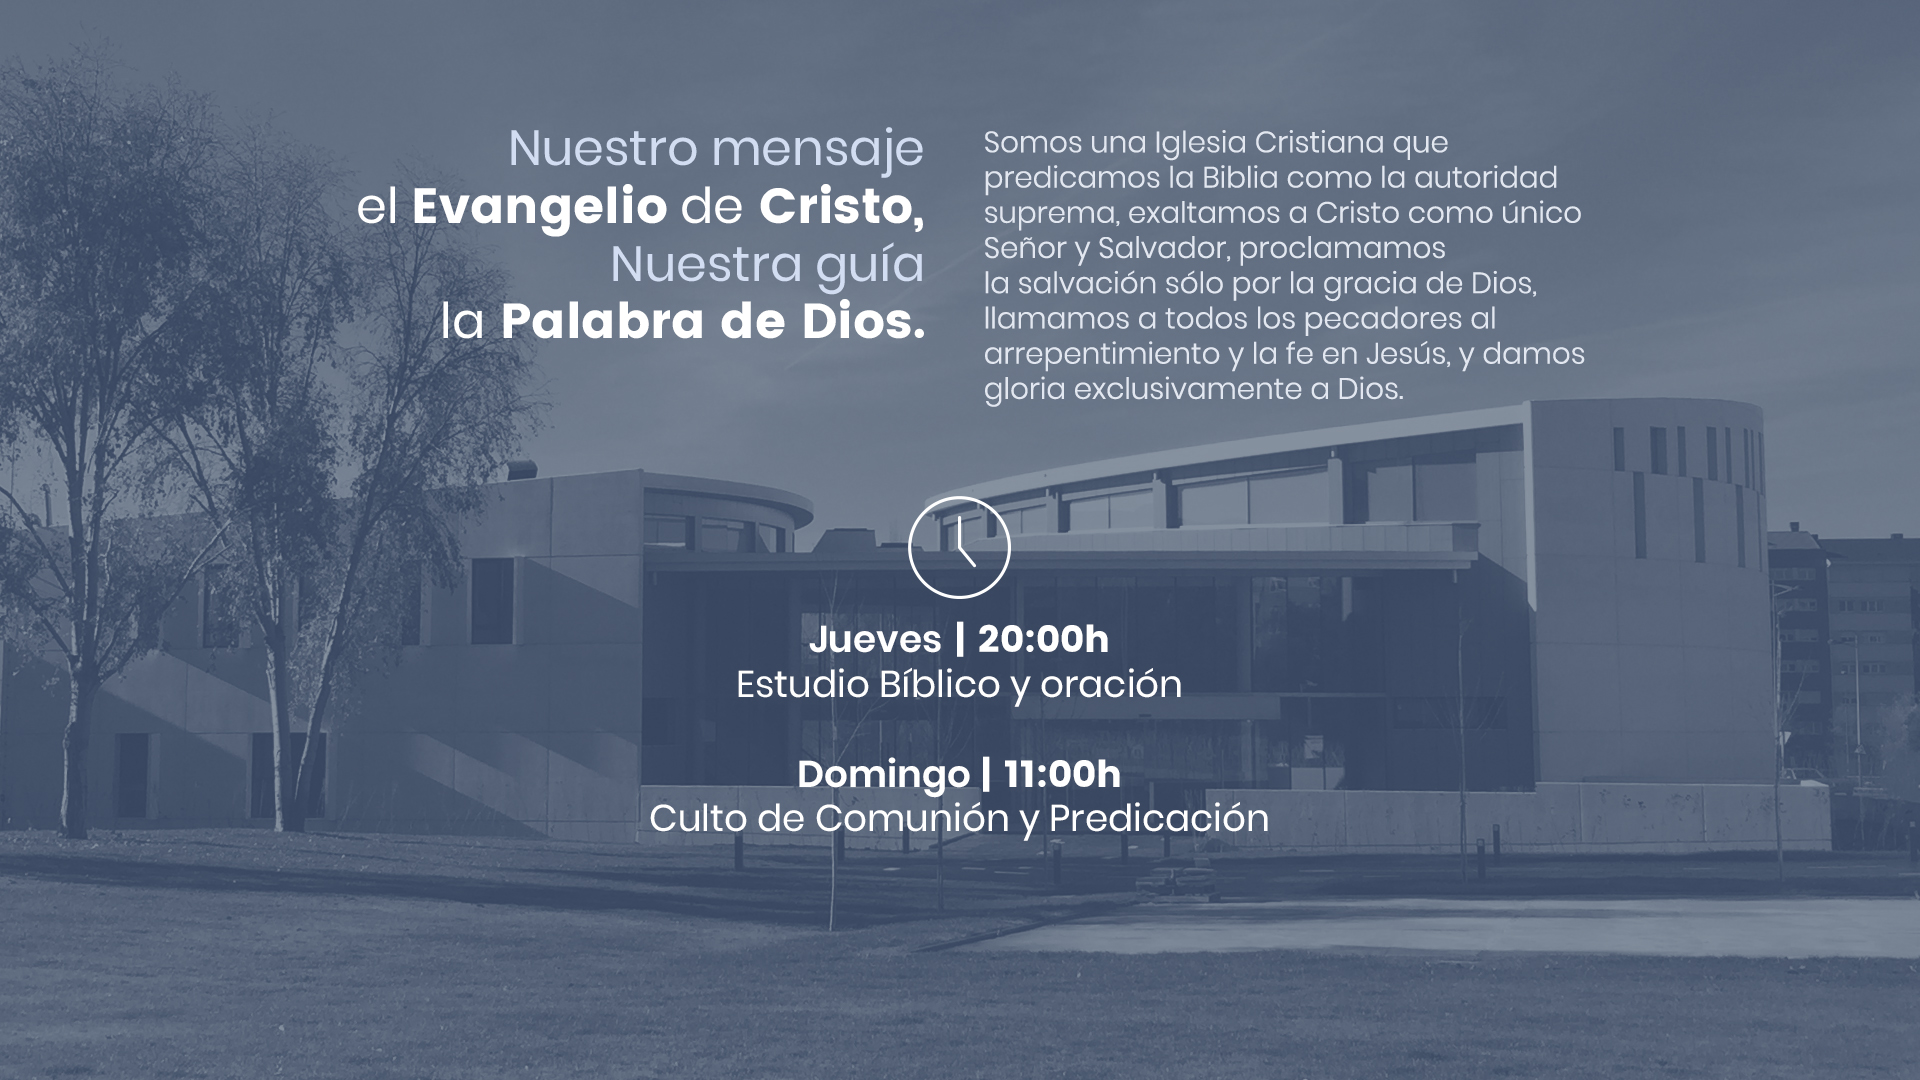 Iglesia Evangélica de León – Nuestro mensaje el Evangelio de Cristo.  Nuestra guía, la Palabra de Dios.